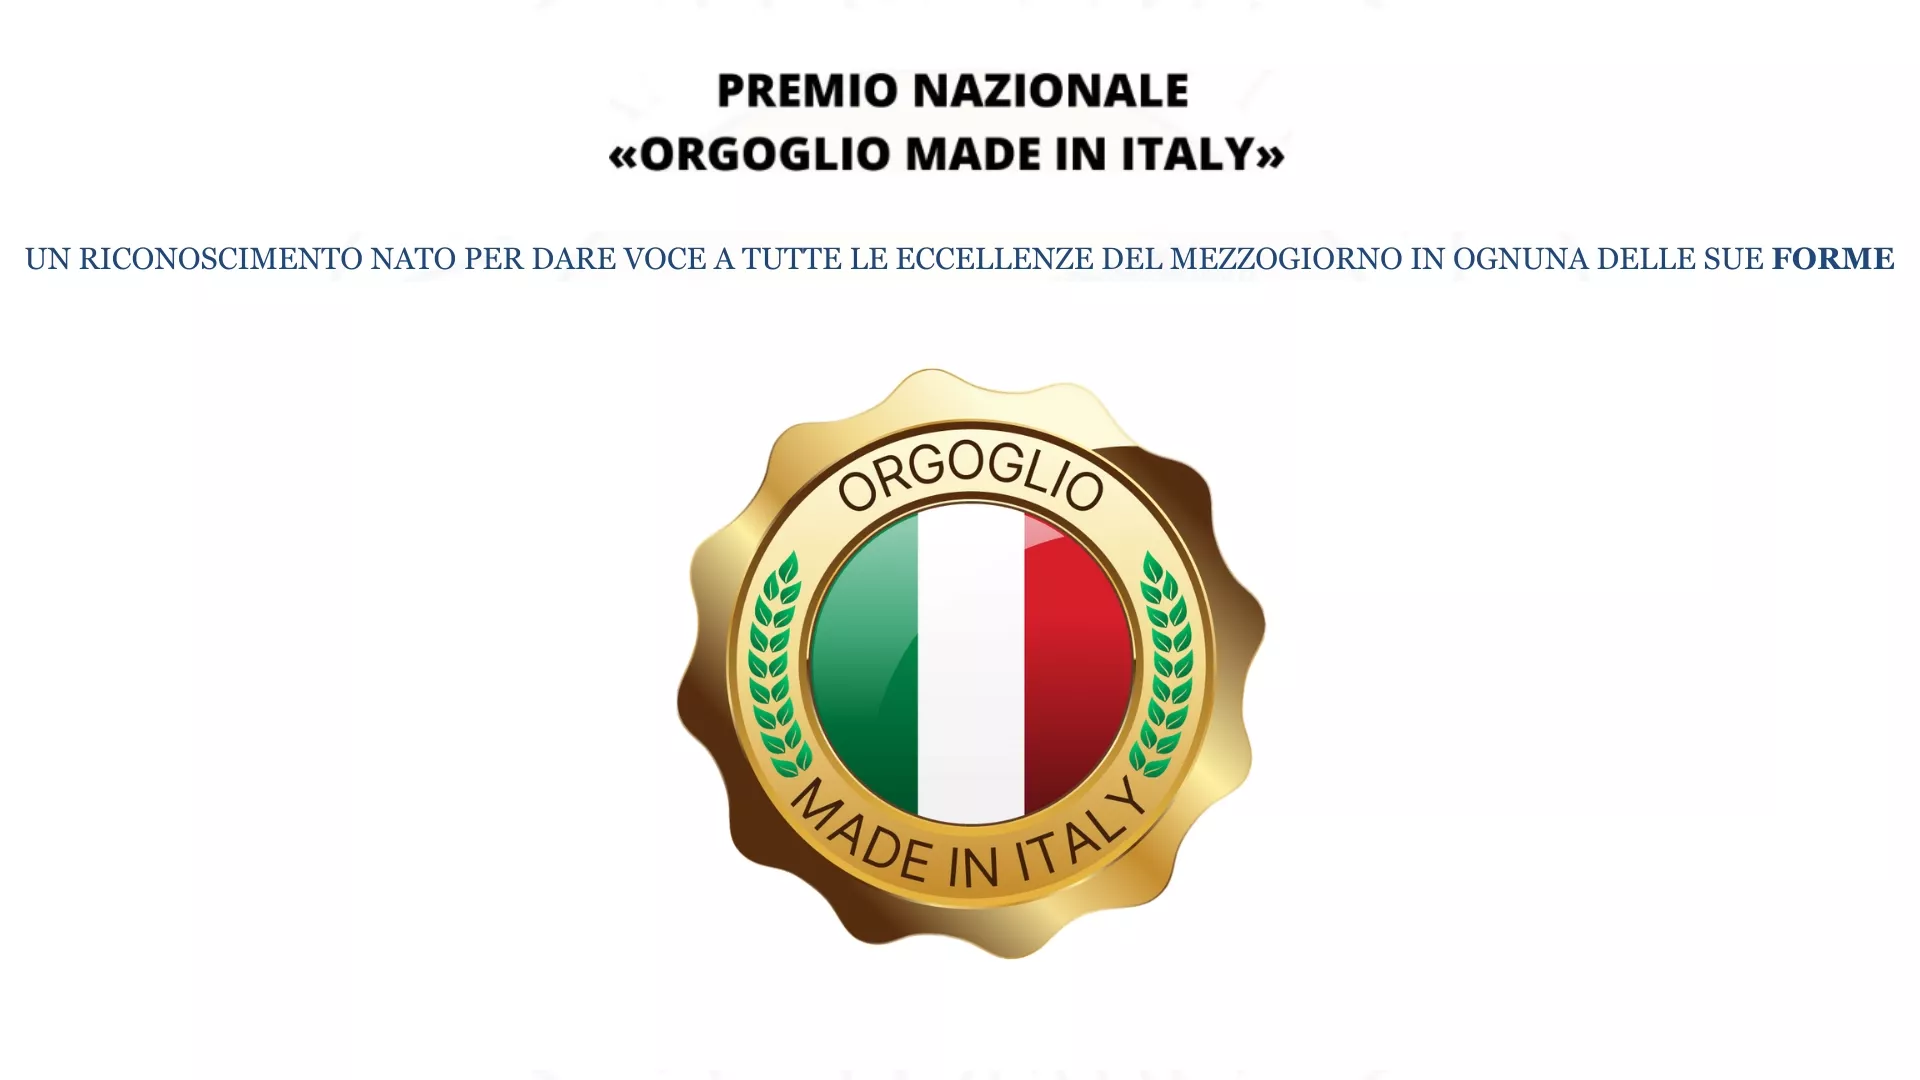 PREMIO-NAZIONALE-ORGOGLIO-MADE-IN-ITALY-1-360b57c0